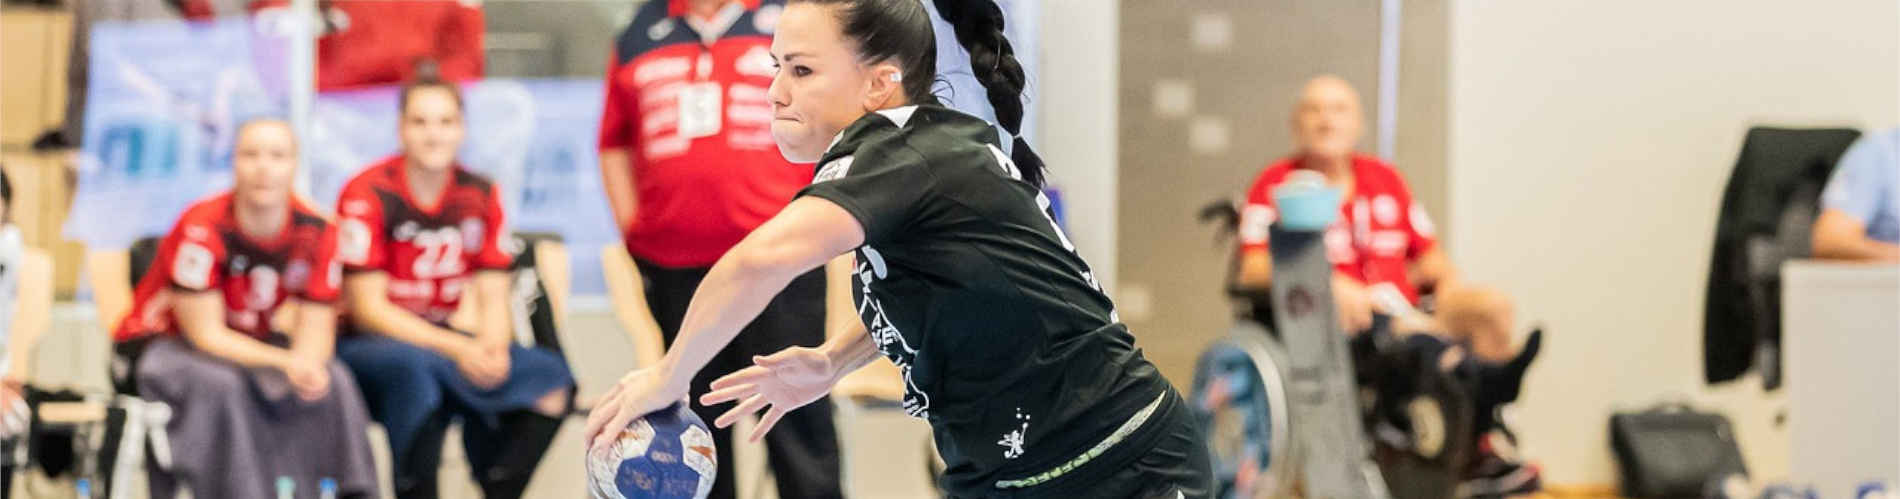 Handball: Starke Frauen - Starke Damen Mannschaften